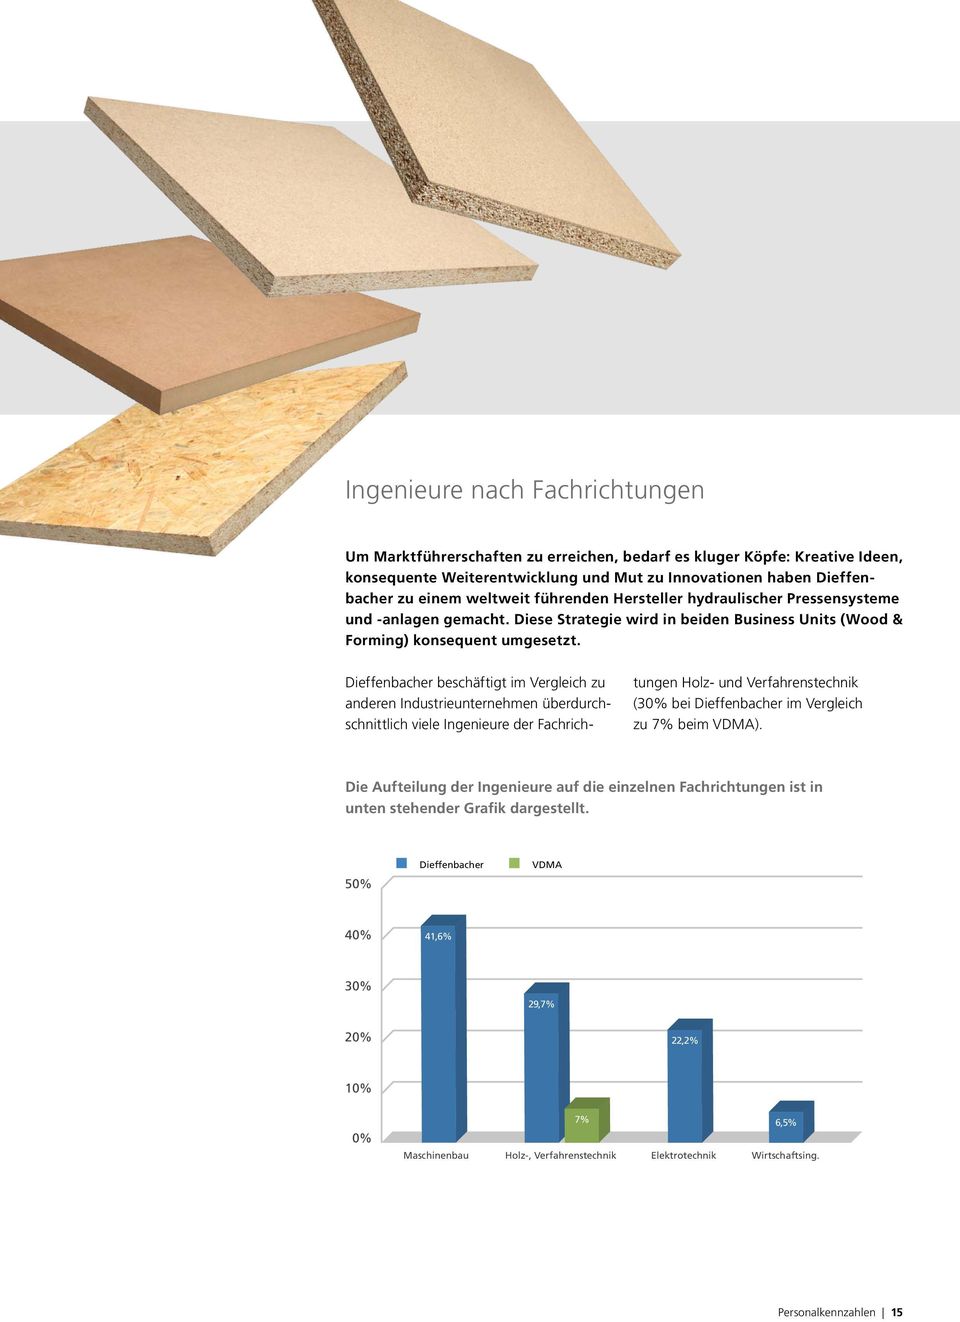 Dieffenbacher beschäftigt im Vergleich zu anderen Industrieunternehmen überdurchschnittlich viele Ingenieure der Fachrichtungen Holz- und Verfahrens technik (30% bei Dieffenbacher im Vergleich zu 7%